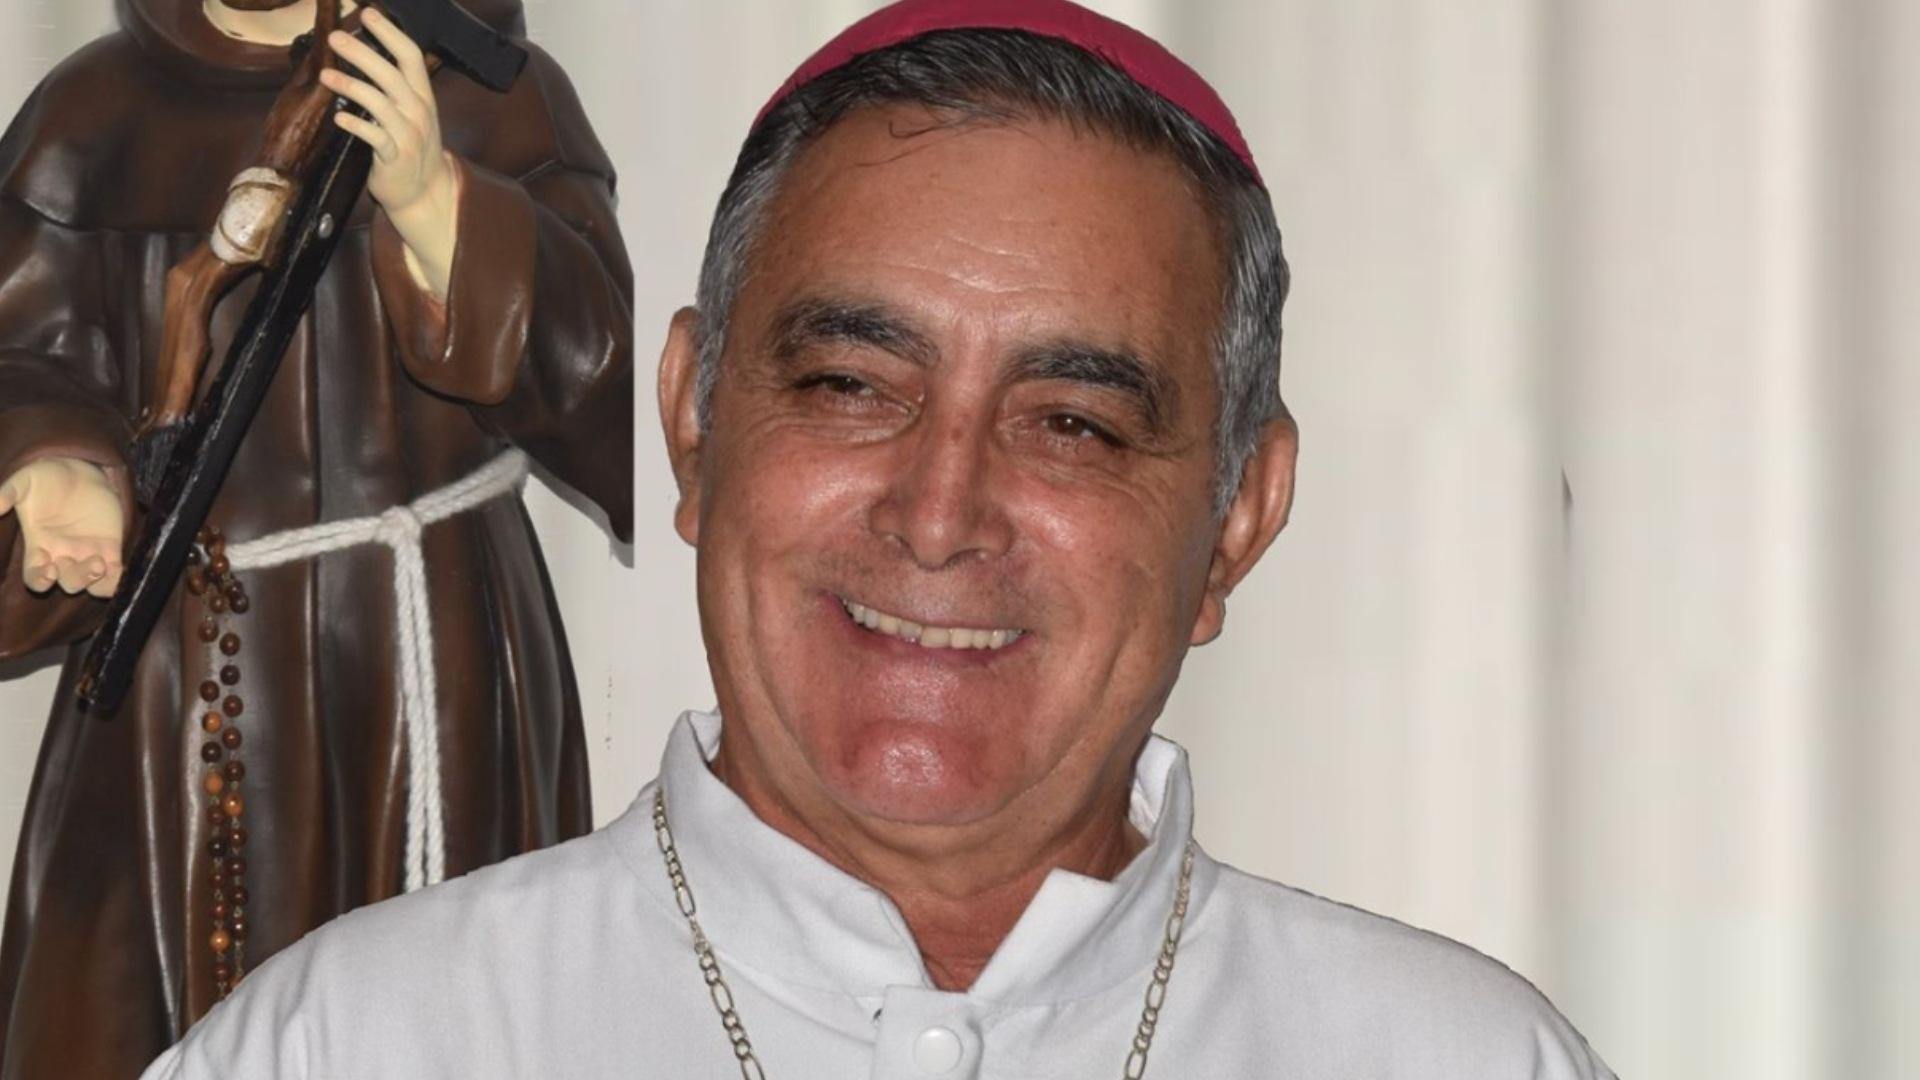 Episcopado Pide No Especular Sobre Caso del Obispo Hallado en Hotel tras Desaparecer